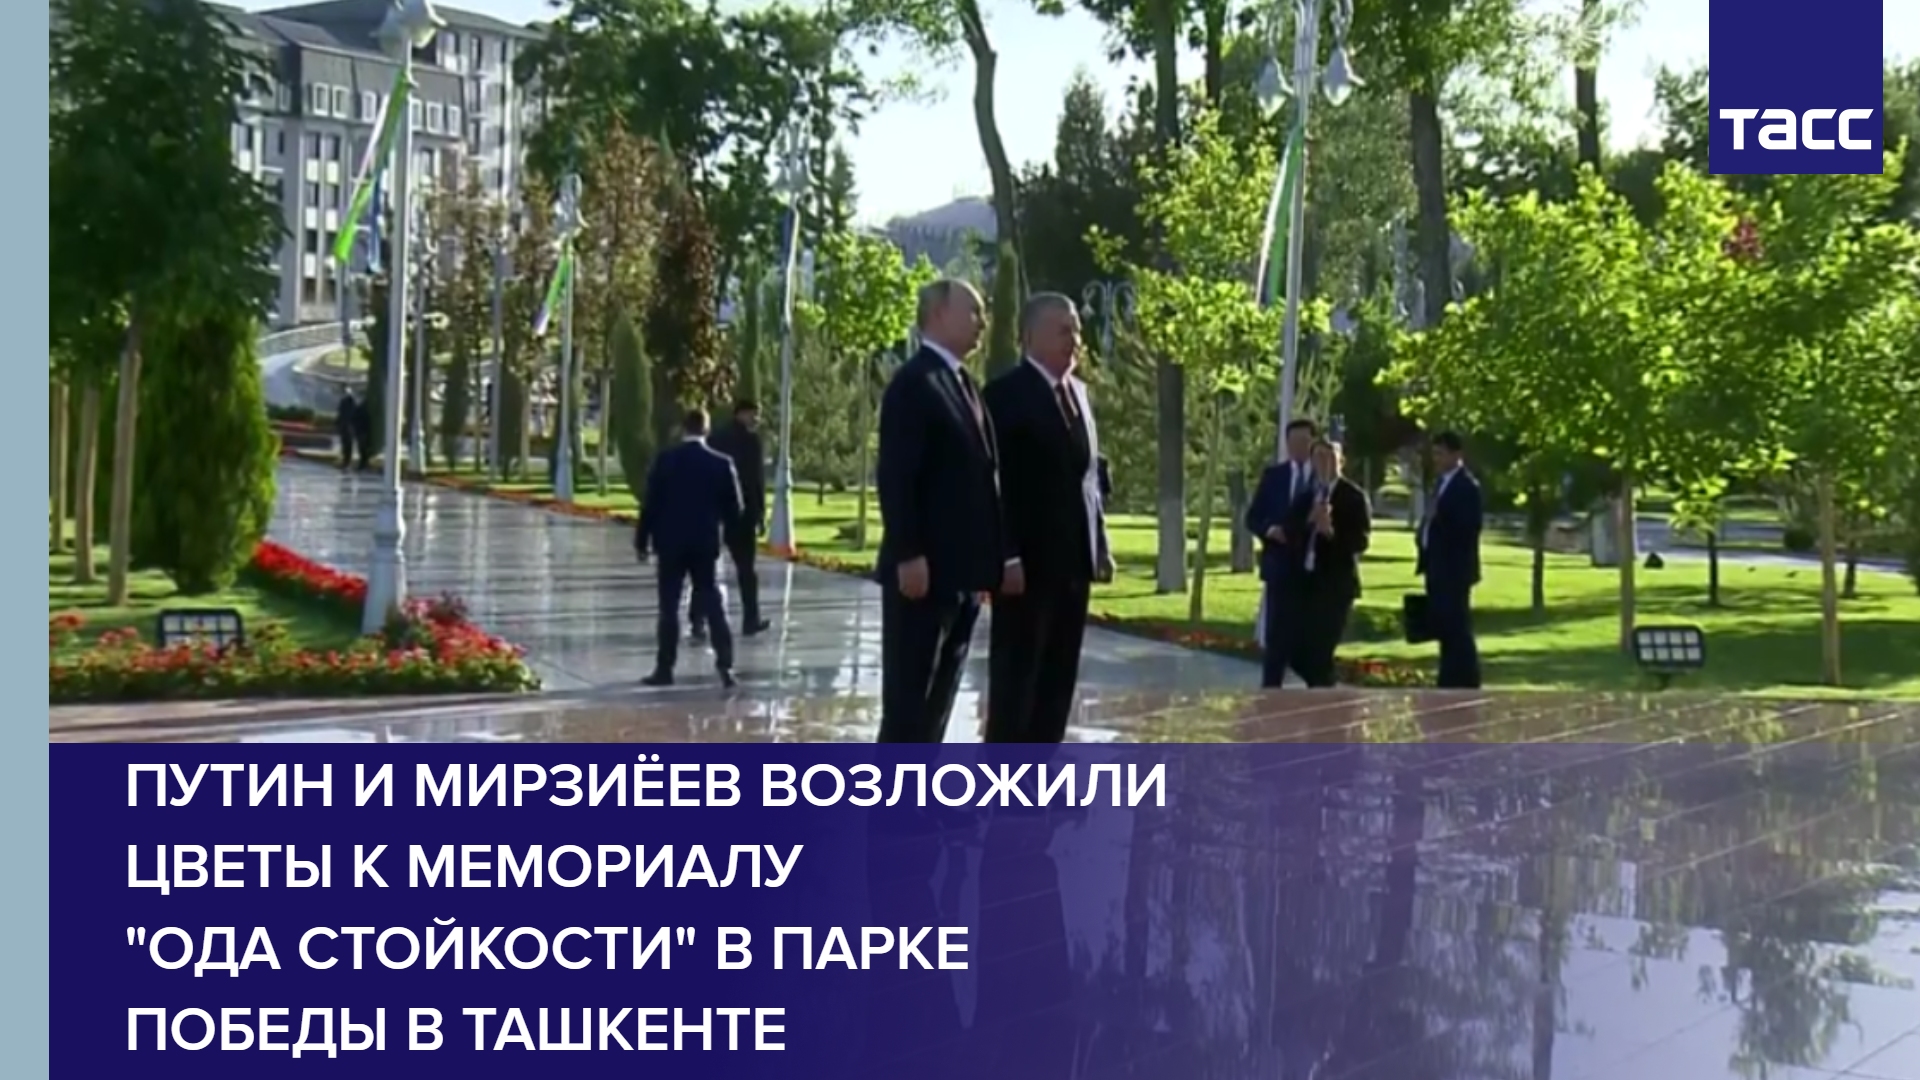 Путин и Мирзиёев возложили цветы к мемориалу "Ода стойкости" в Парке Победы в Ташкенте